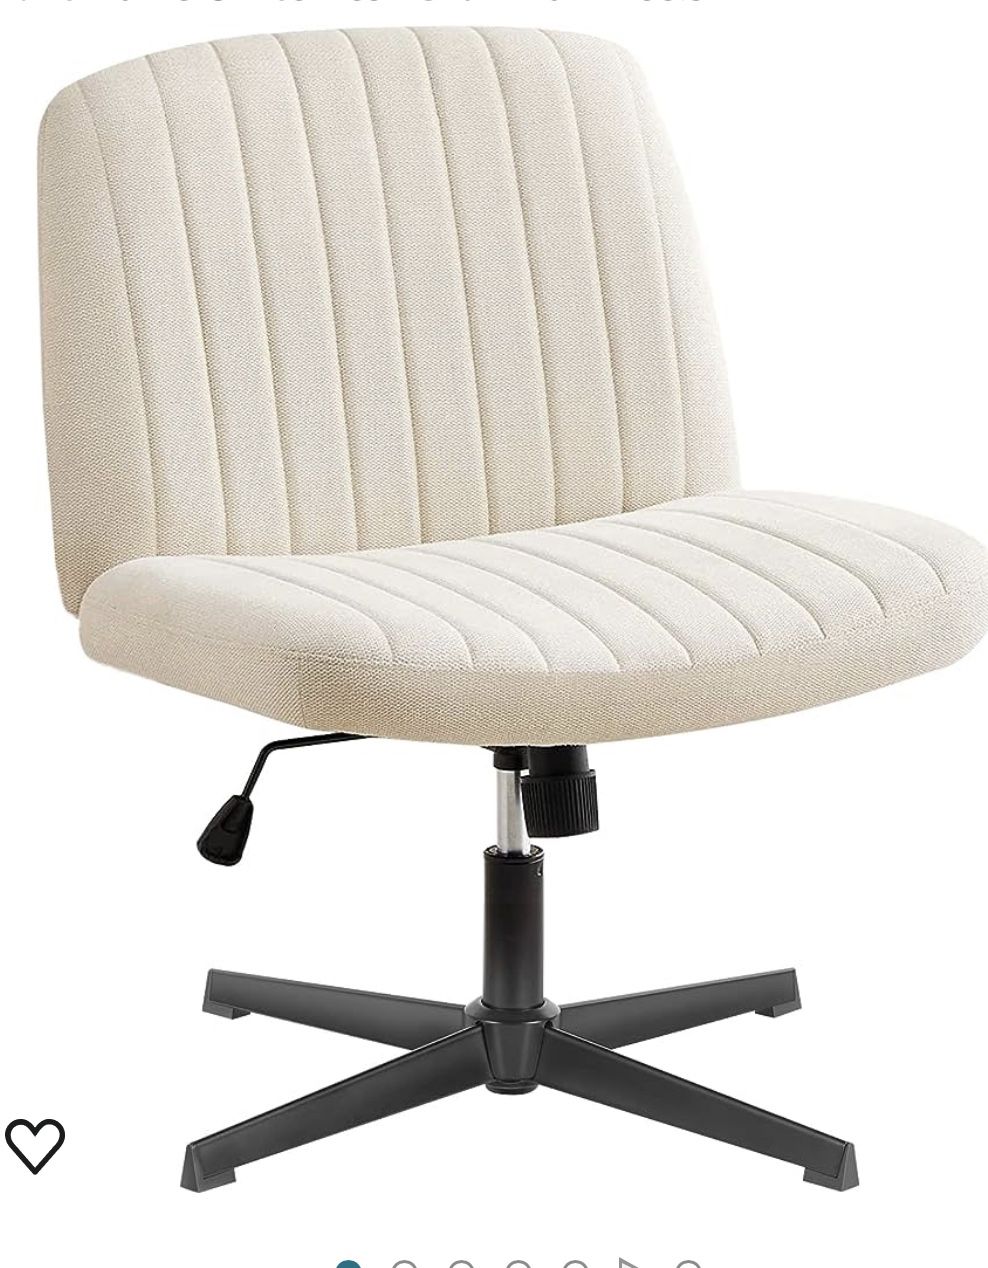 Brand New Cream Criss Cross Office Chair